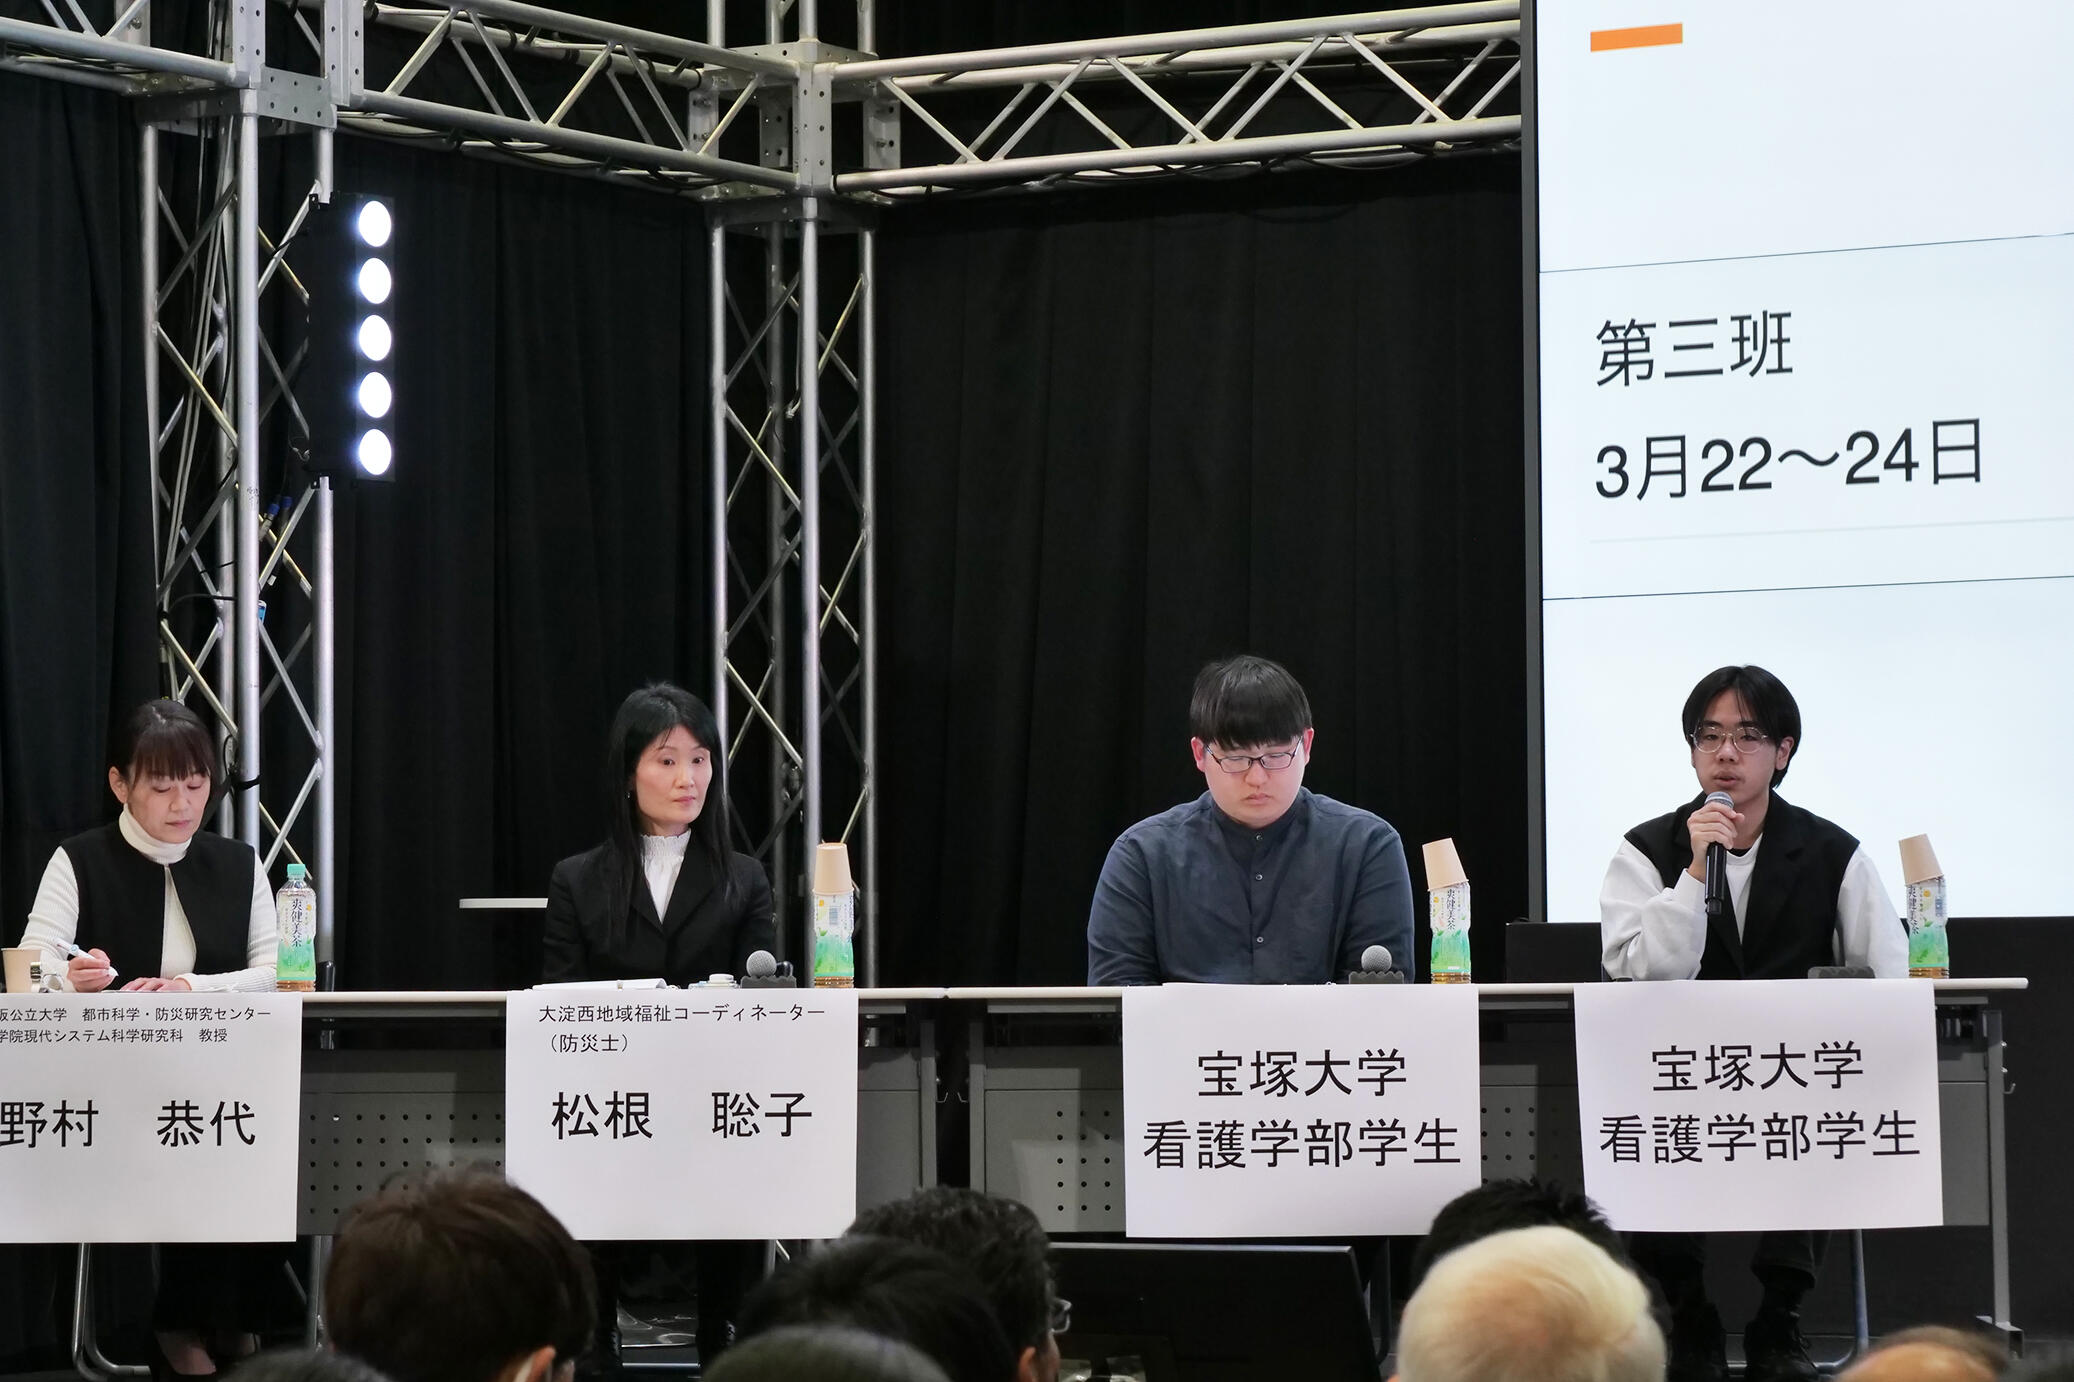 【地域連携】4/5（金）、大阪中央ロータリークラブ様主催のイベントに、本学学生がパネラーとして参加しました。